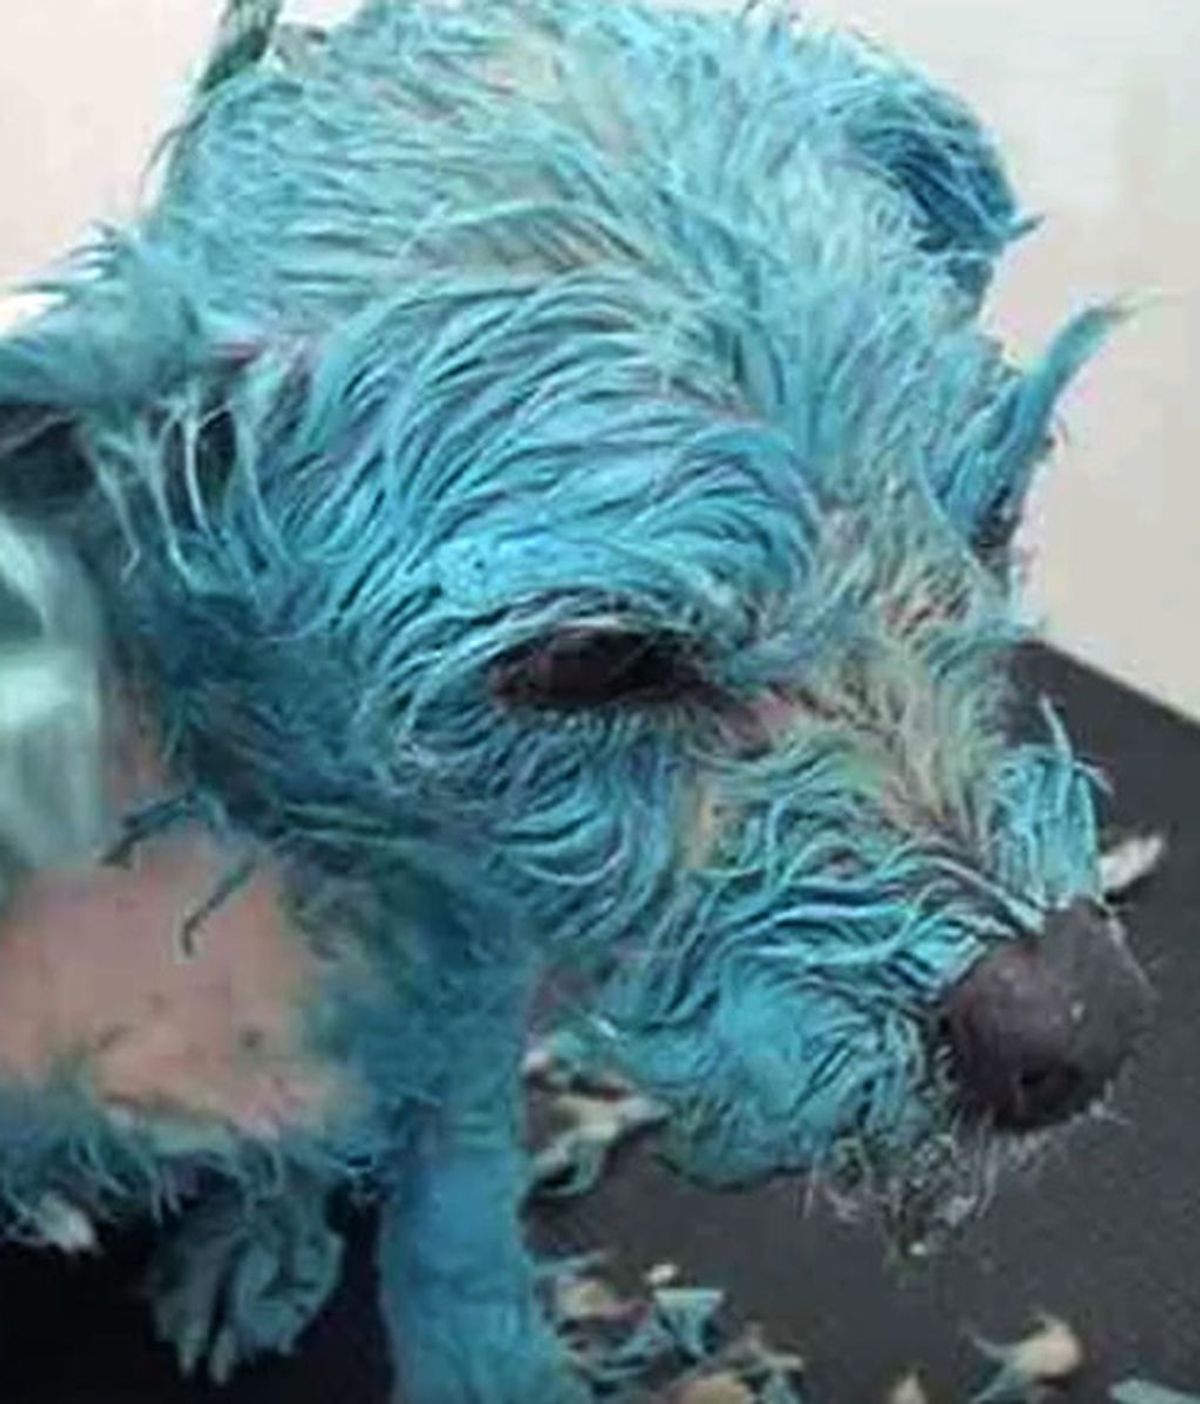 Muñeca, la perra maltratada que pintan de azul y la matan con un punzón